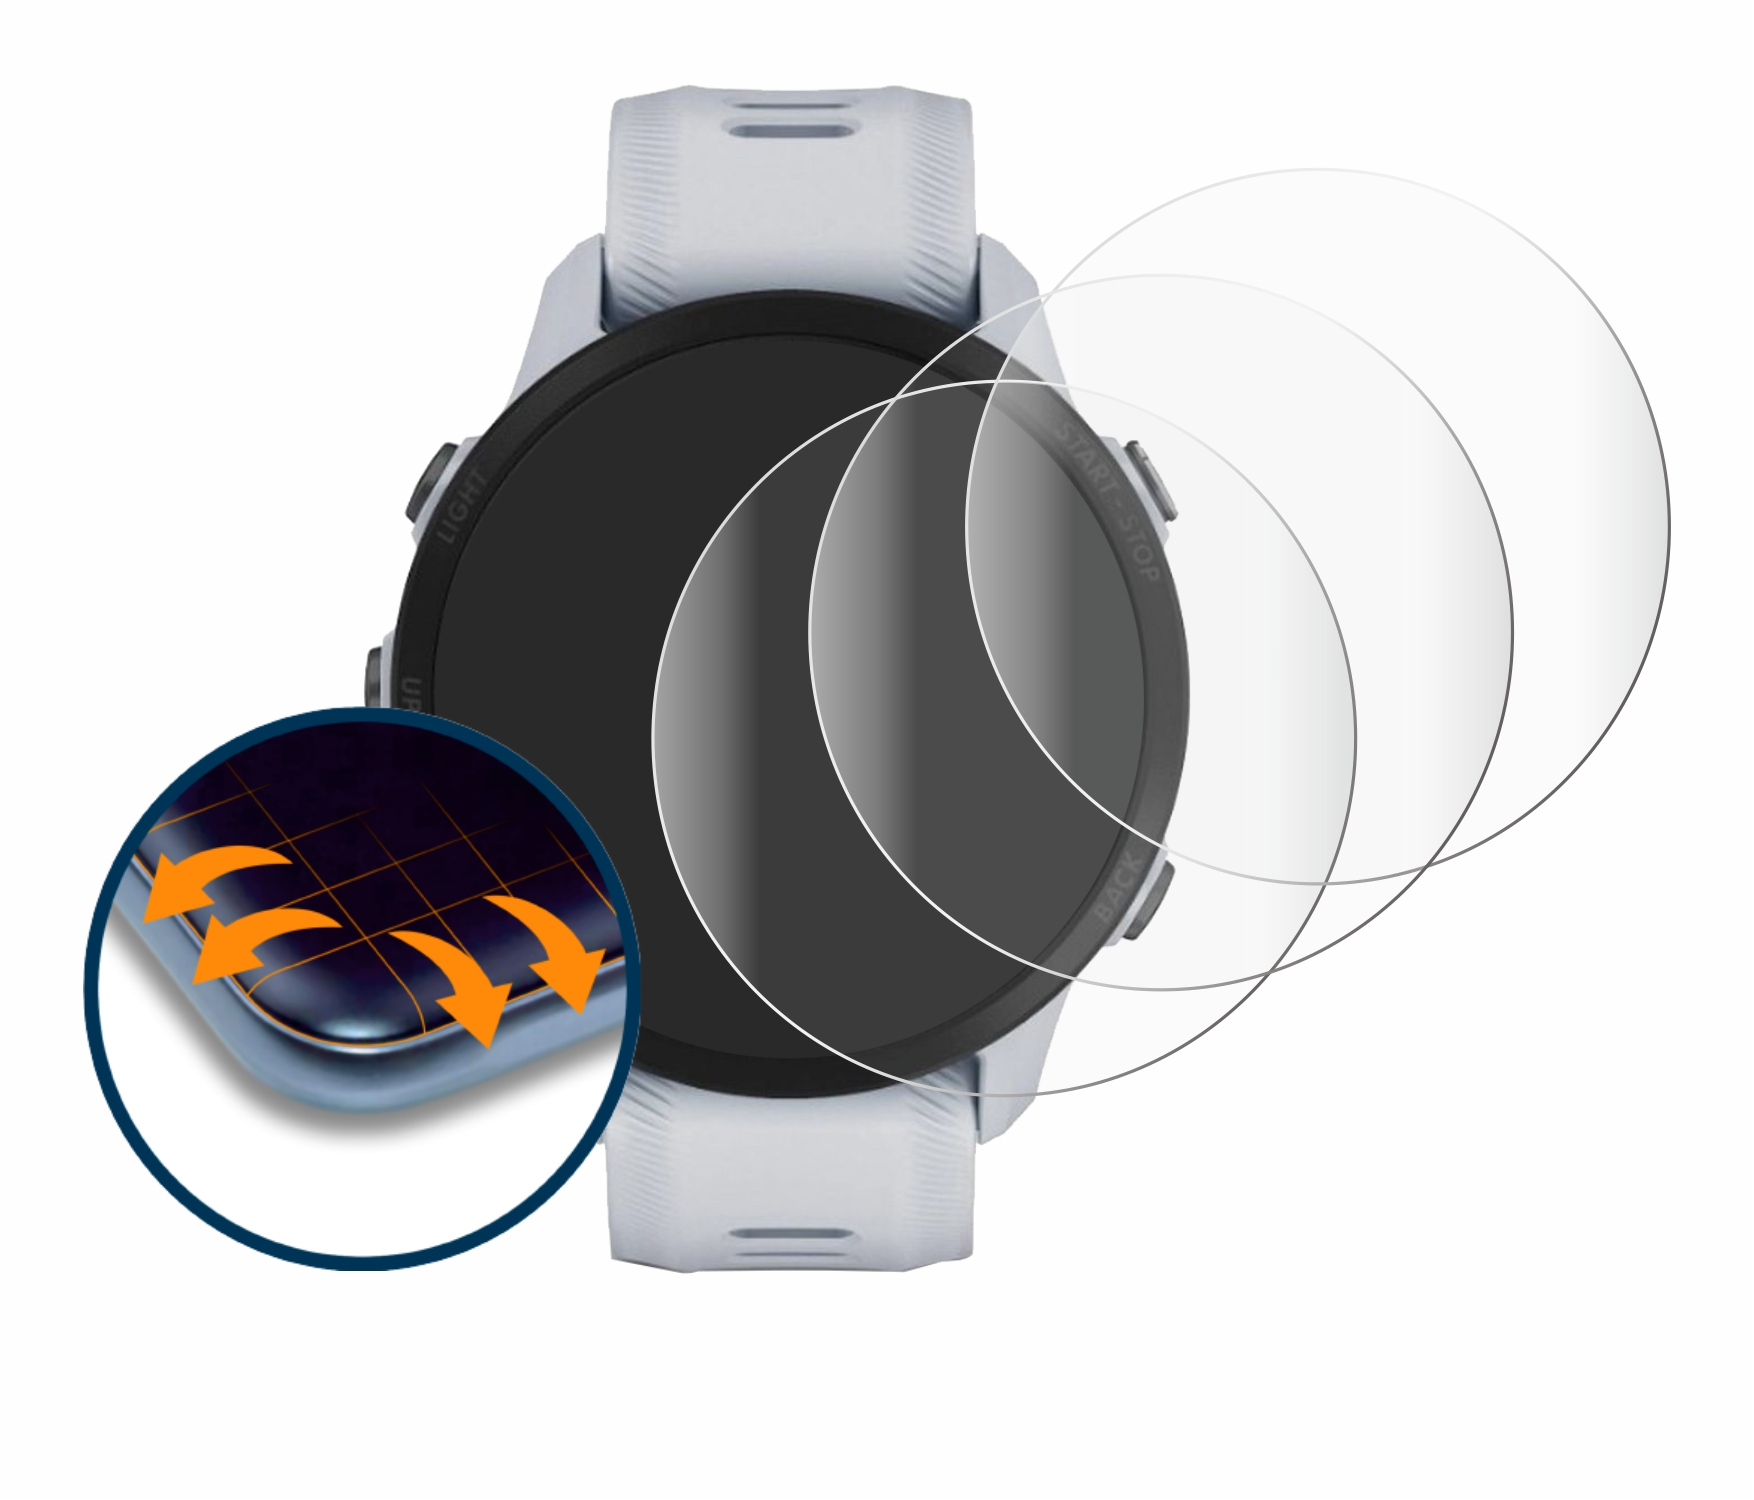 Garmin Curved 955 Solar) Forerunner 4x SAVVIES Flex Schutzfolie(für Full-Cover 3D